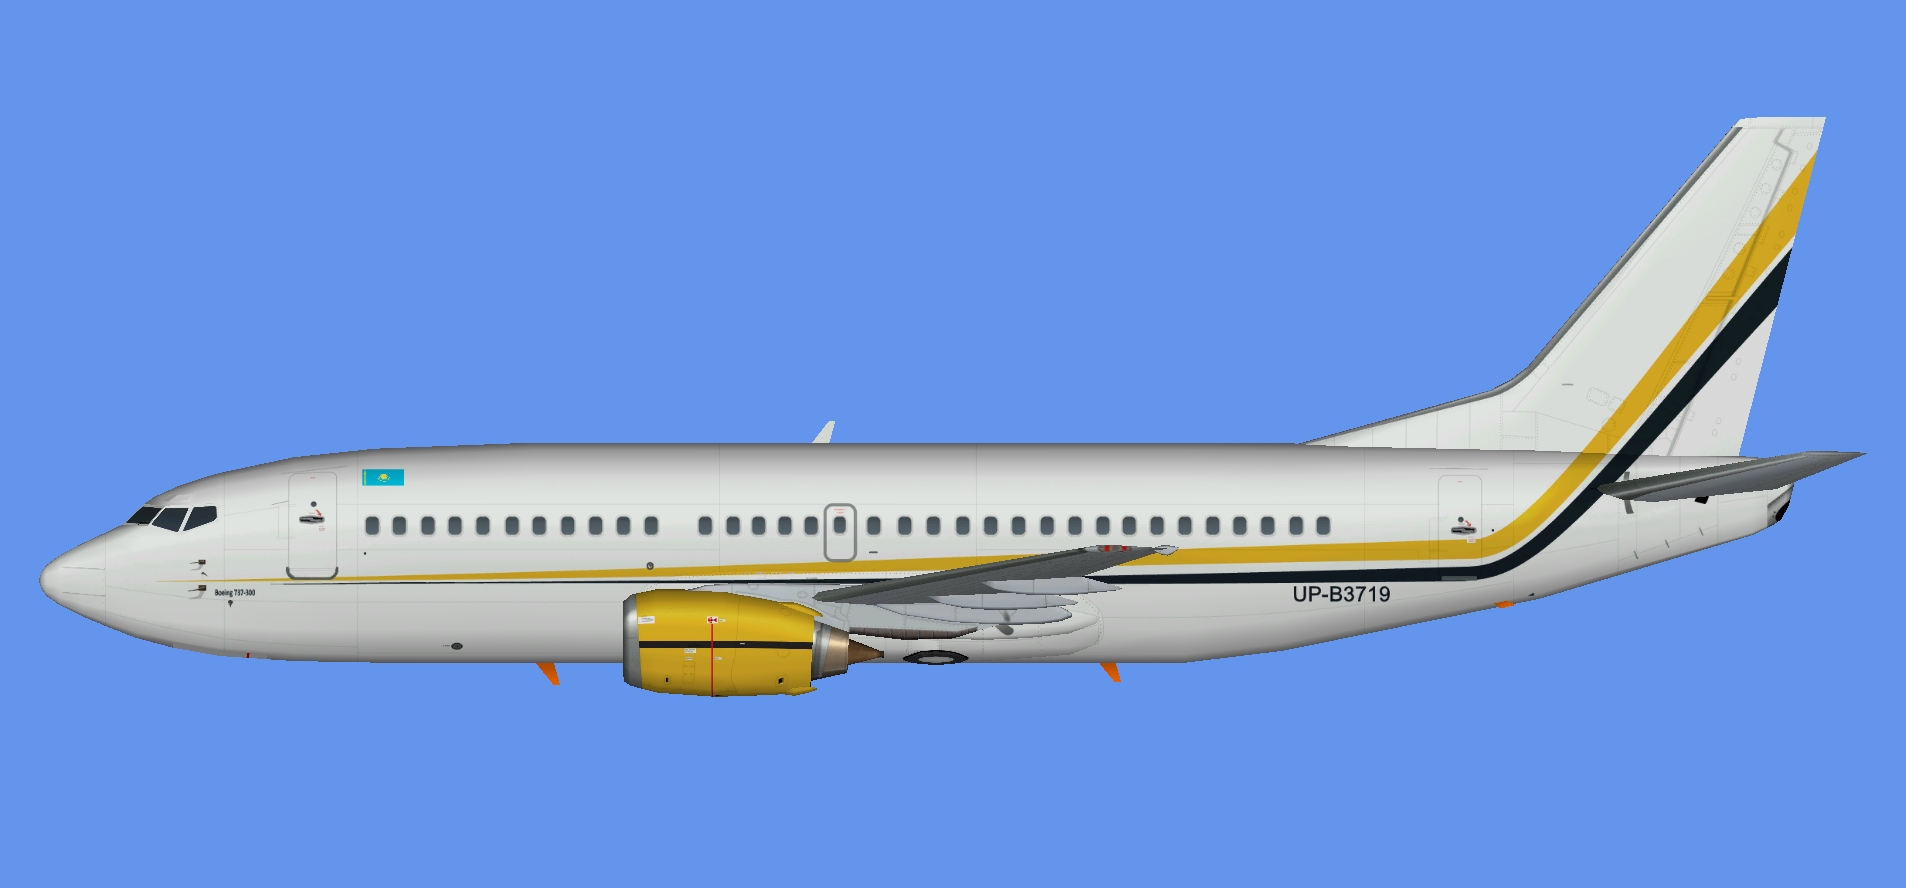 Sunkar Air Boeing 737-300